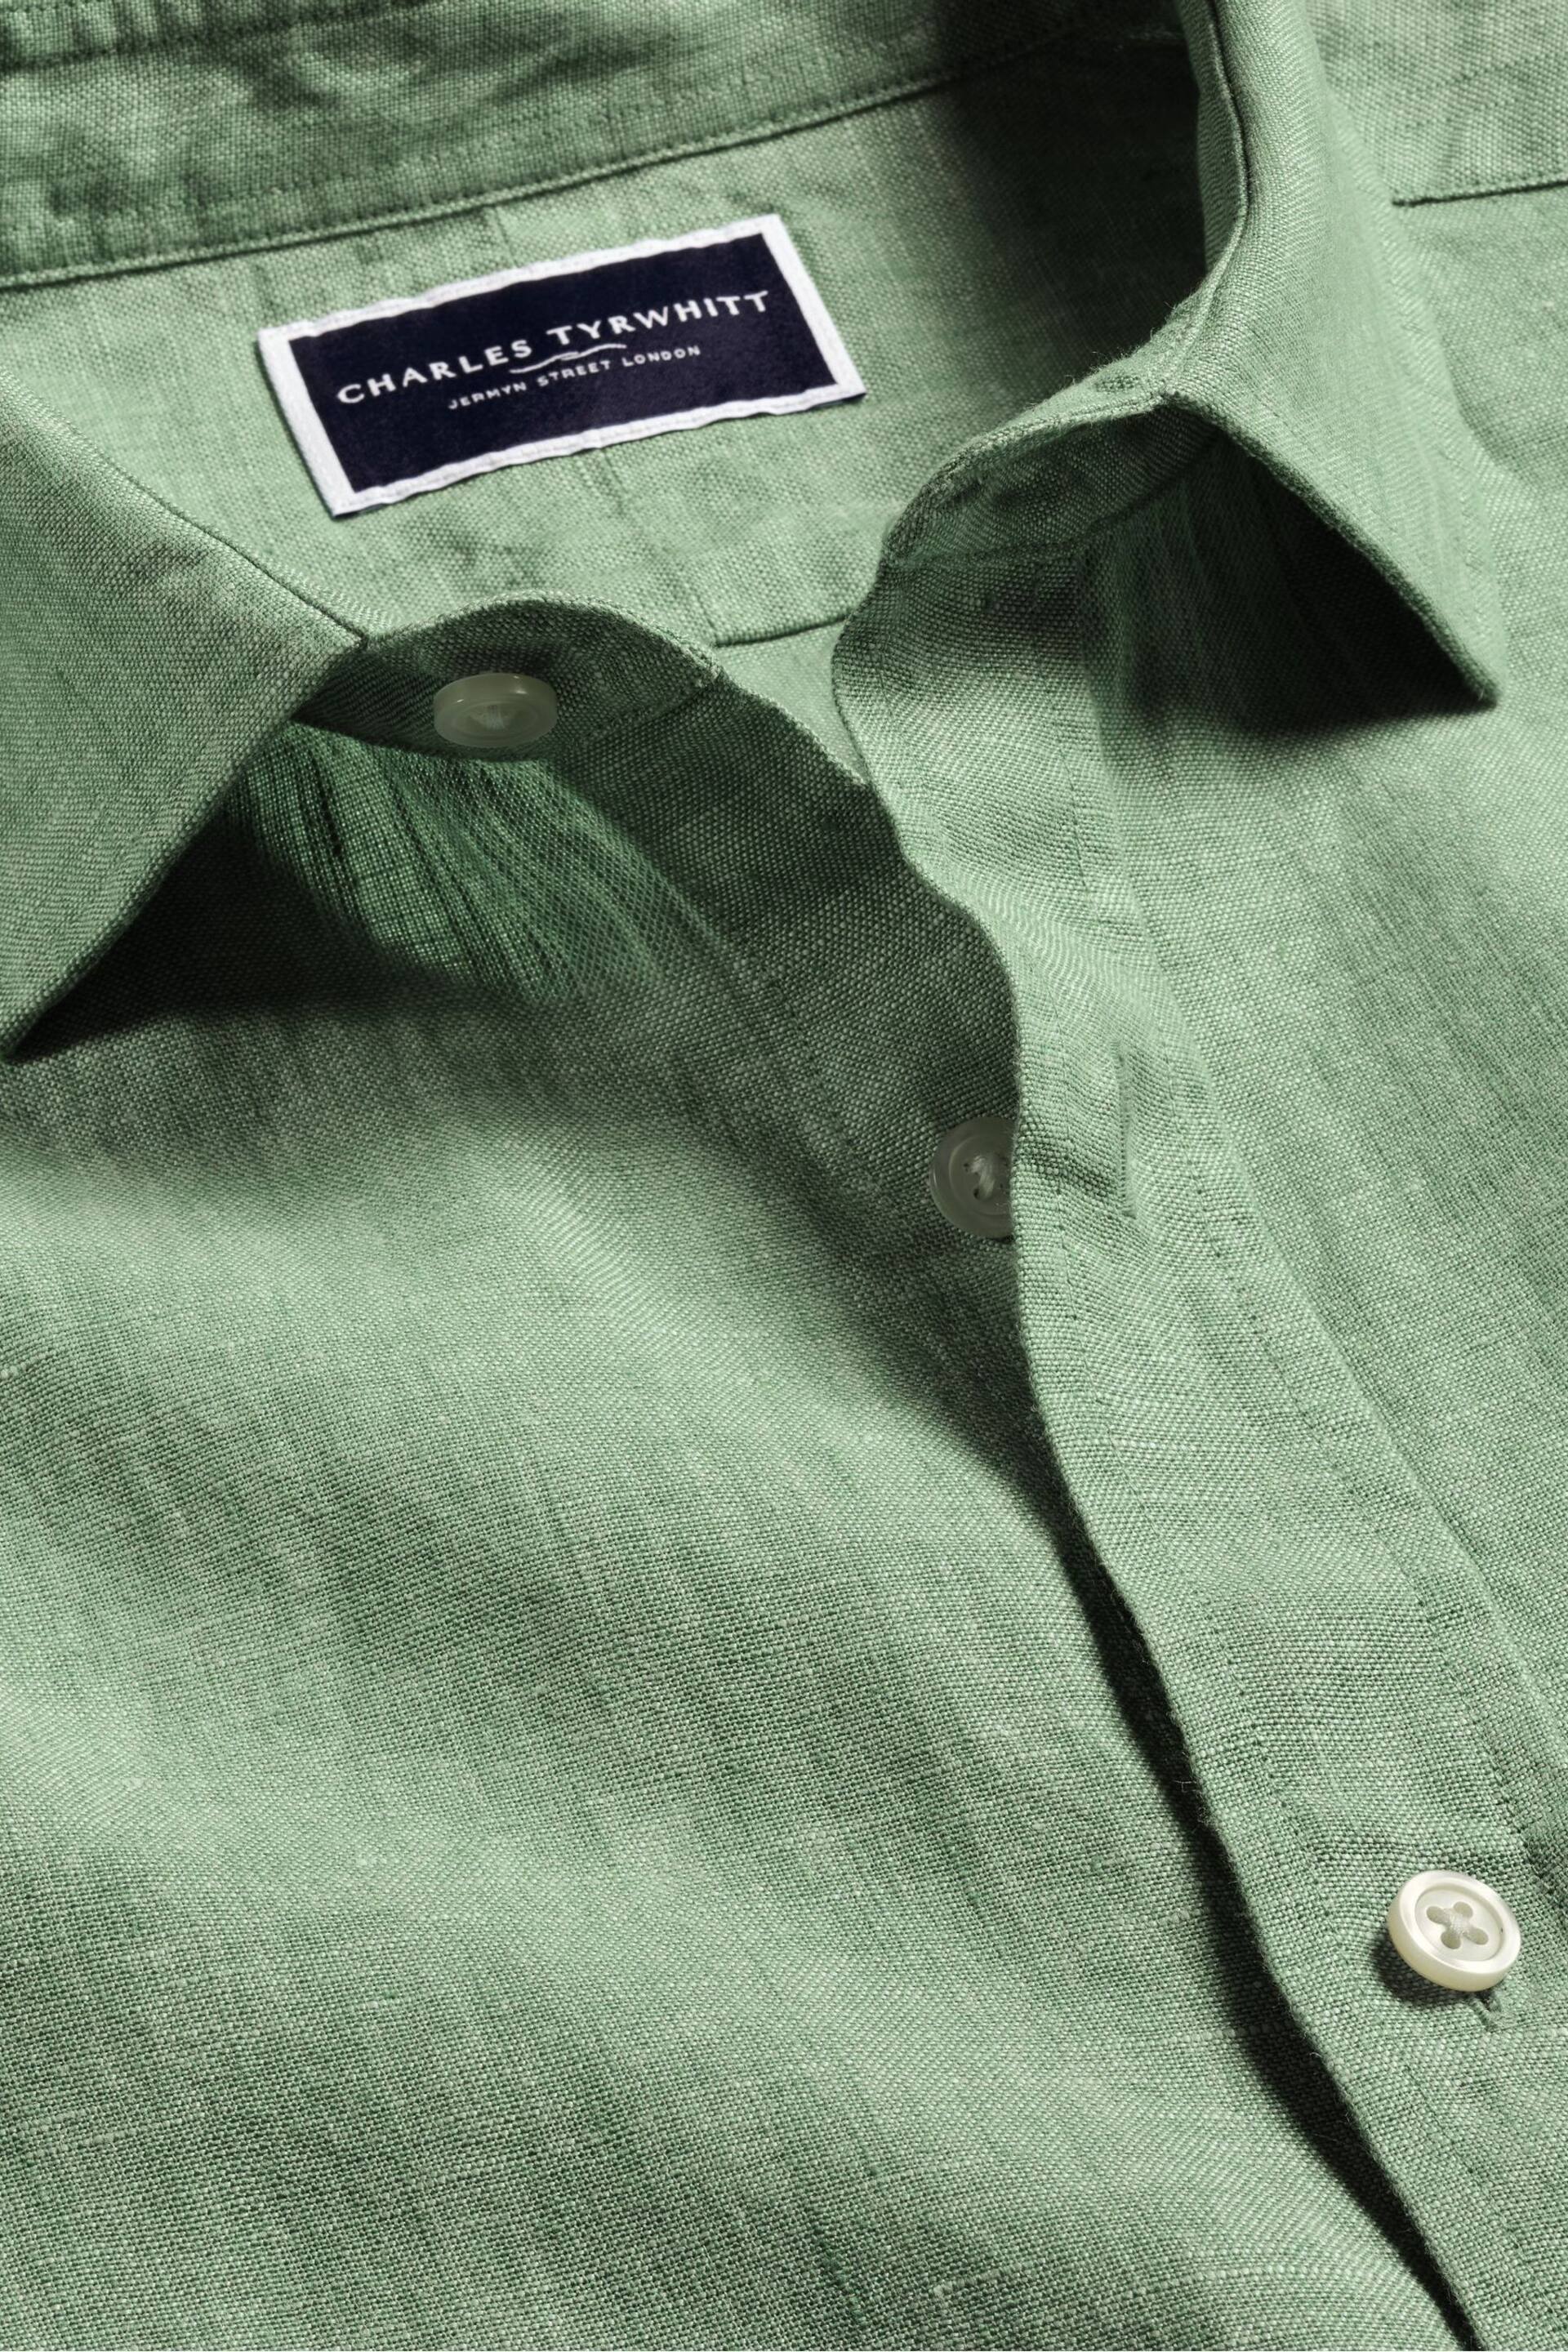 Charles Tyrwhitt Green Slim Fit Plain Short Sleeve Pure Linen Full Sleeves Shirt - Image 5 of 6